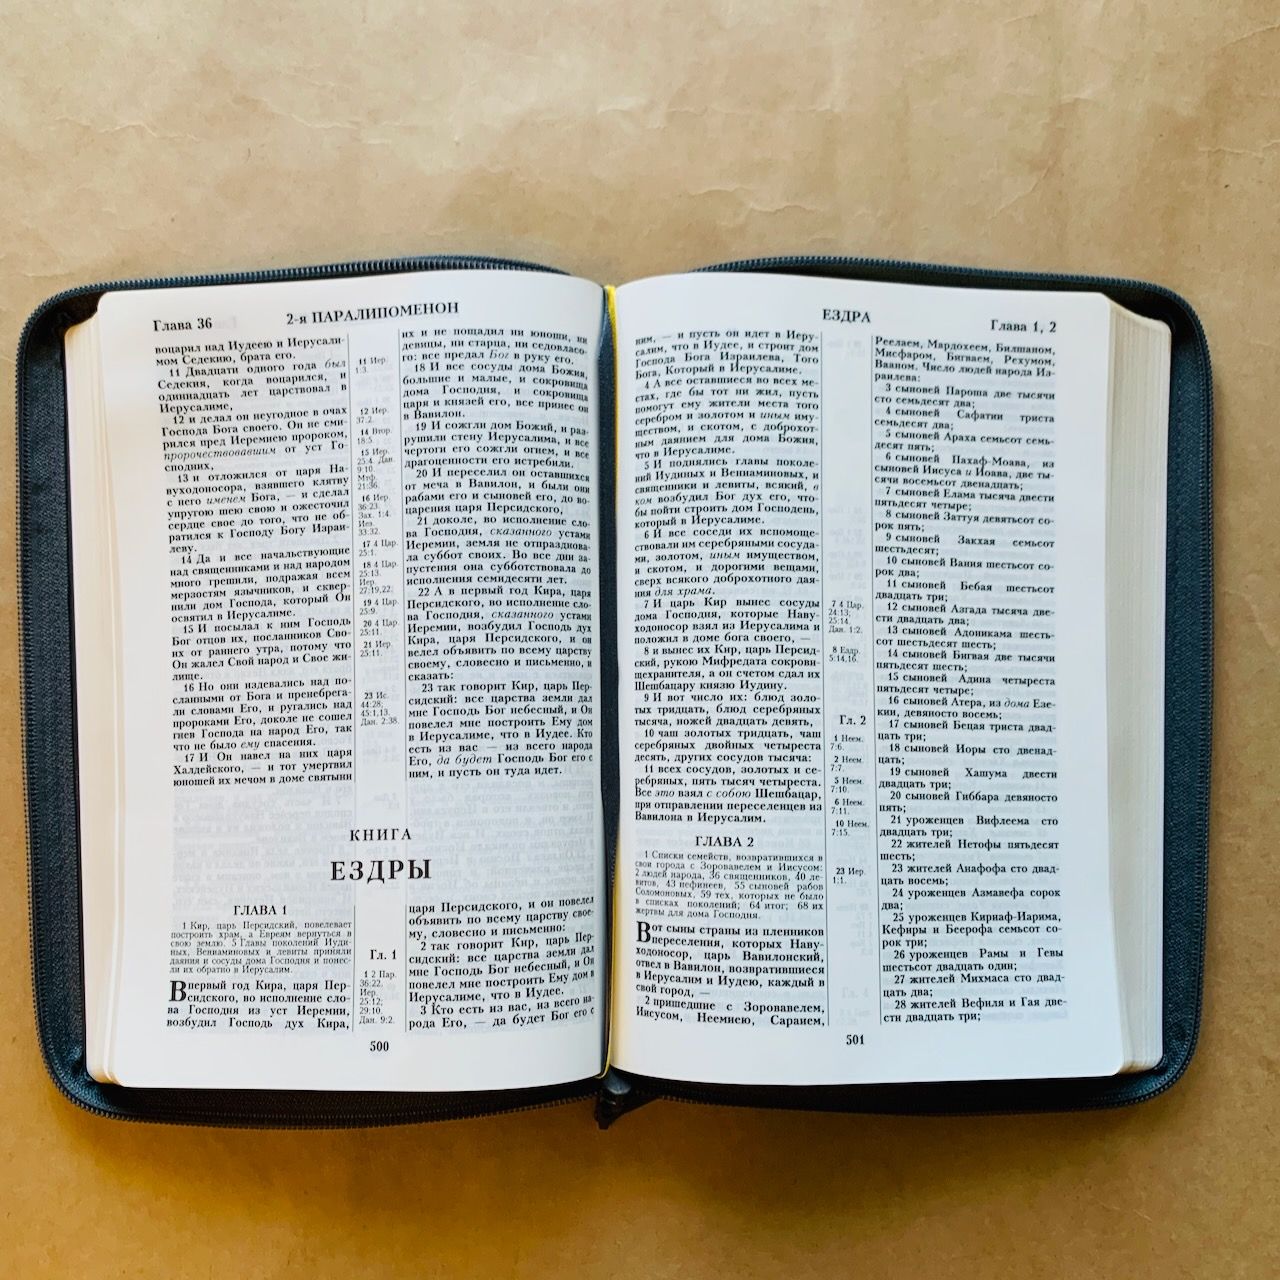 Библия 076z код F1, дизайн "термо штамп руки молящегося", переплет из искусственной кожи на молнии, цвет серый графит ребристый, размер 180x243 мм